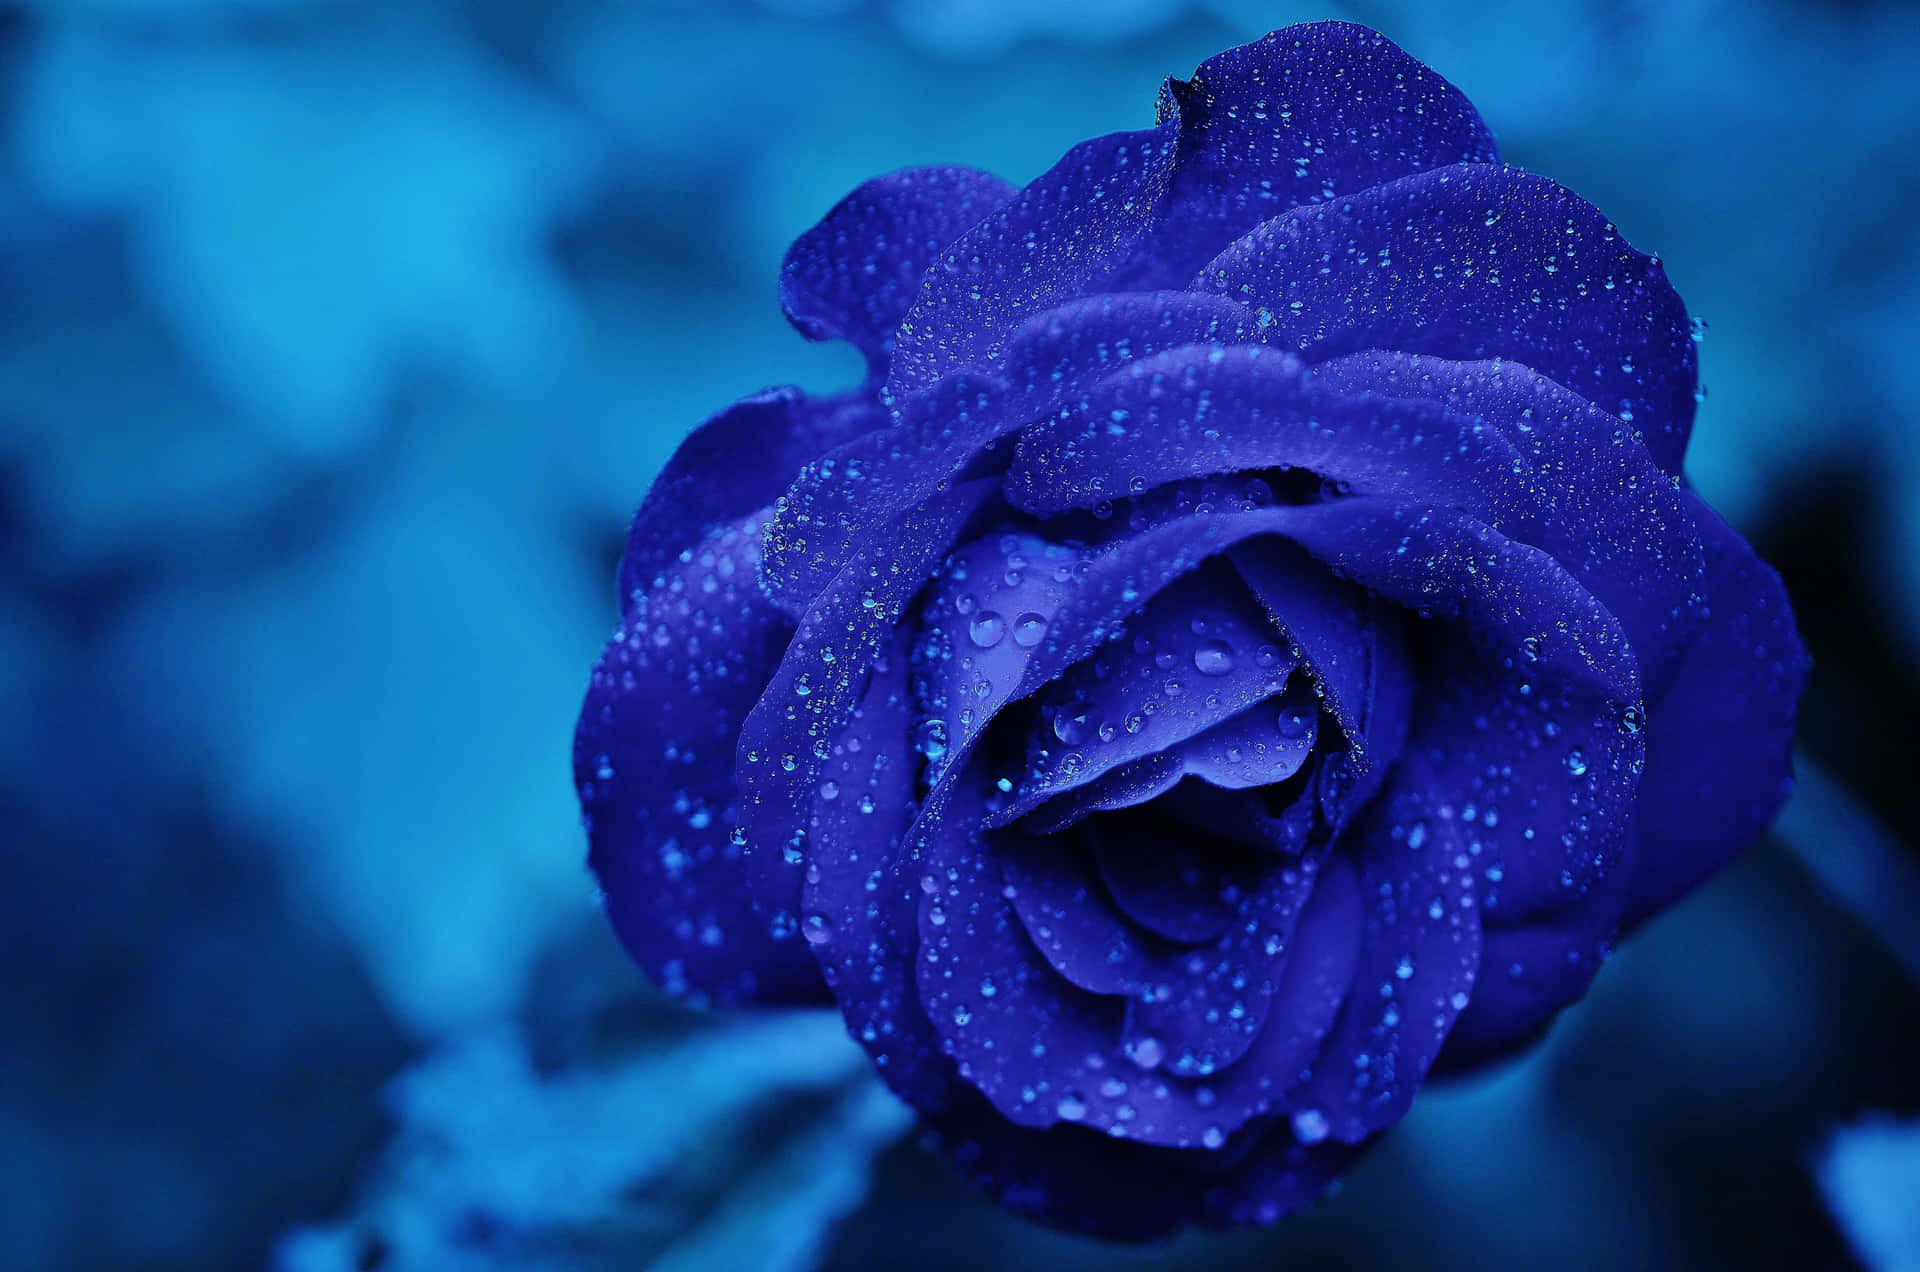 Fühlensie Sich Traurig? Diese Blaue Rose Ist Perfekt Für Jede Gelegenheit. Wallpaper